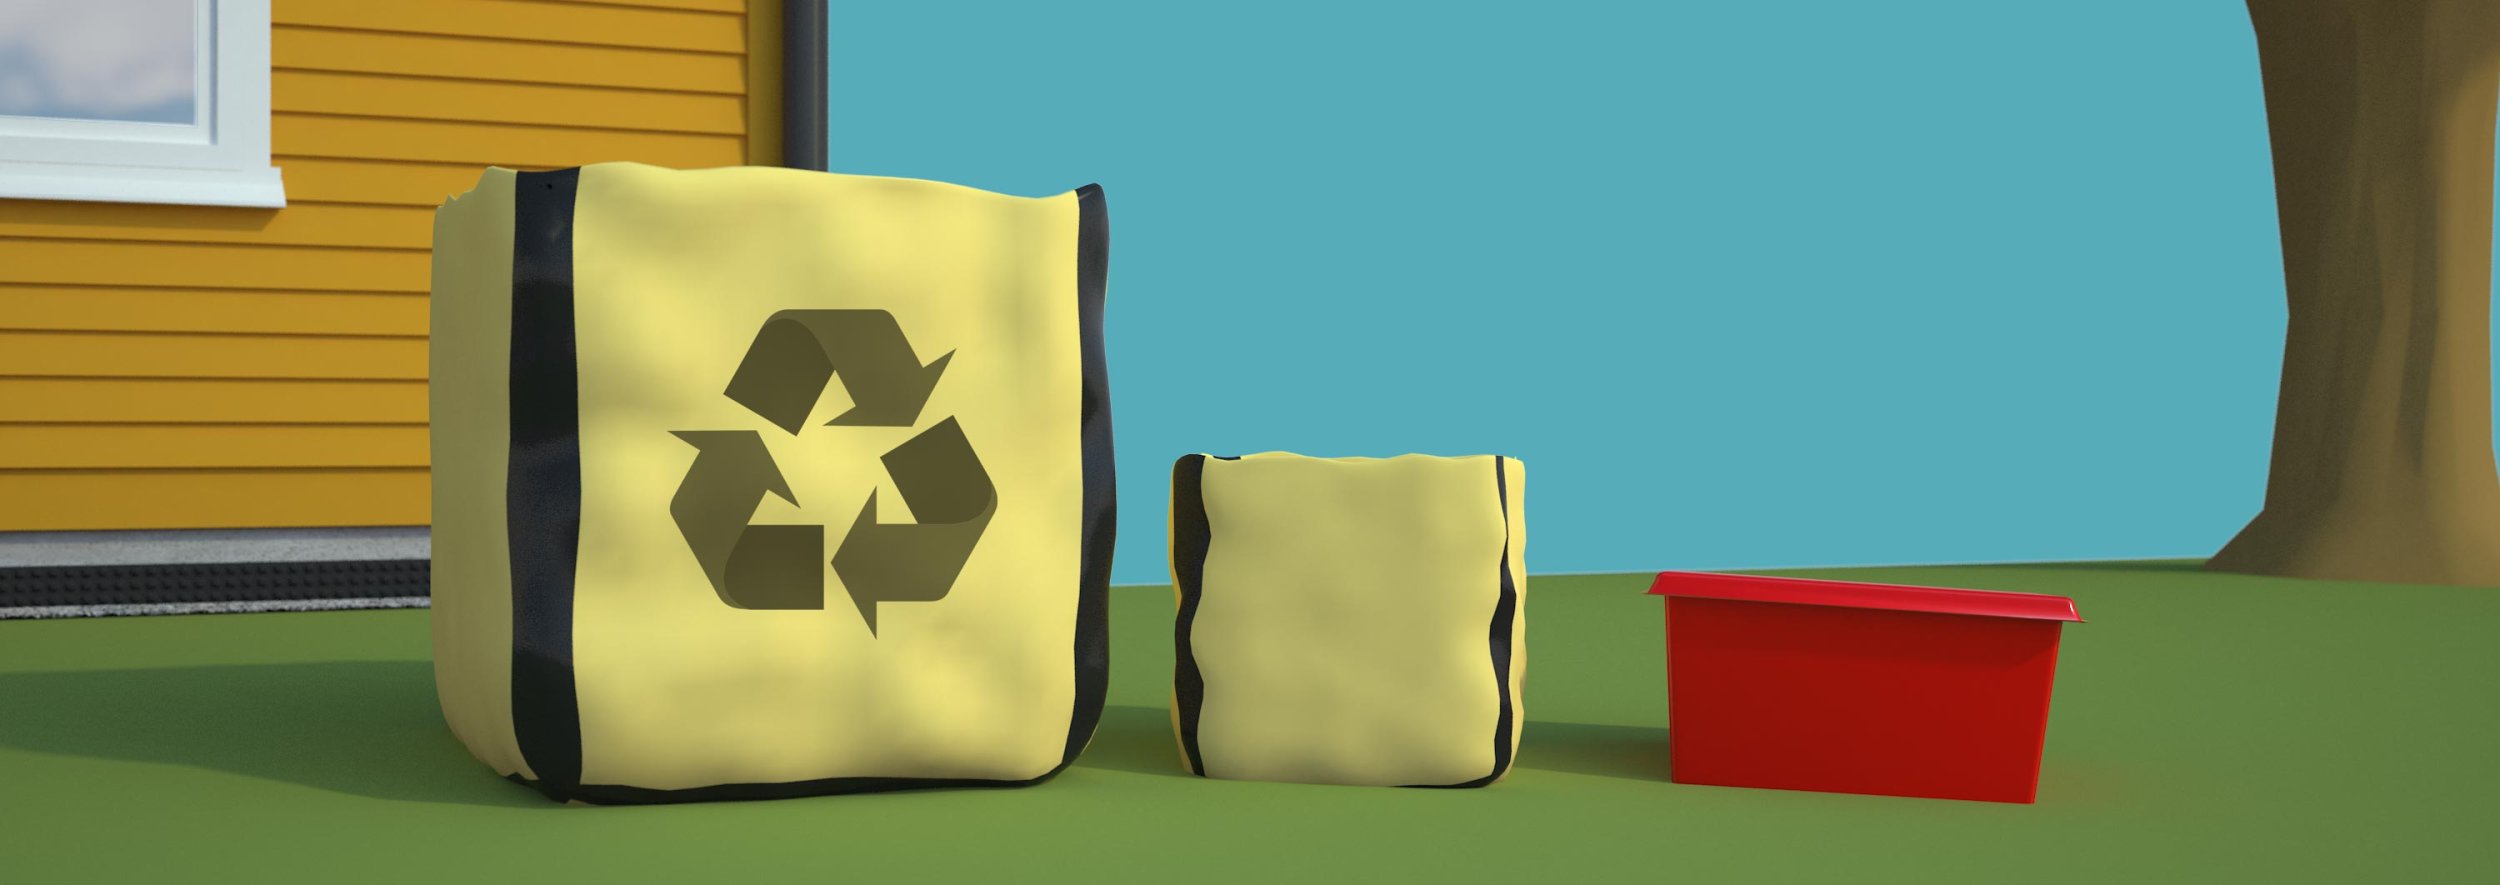 illustrasjon avfallssekker med og uten symbol for gjenvinning